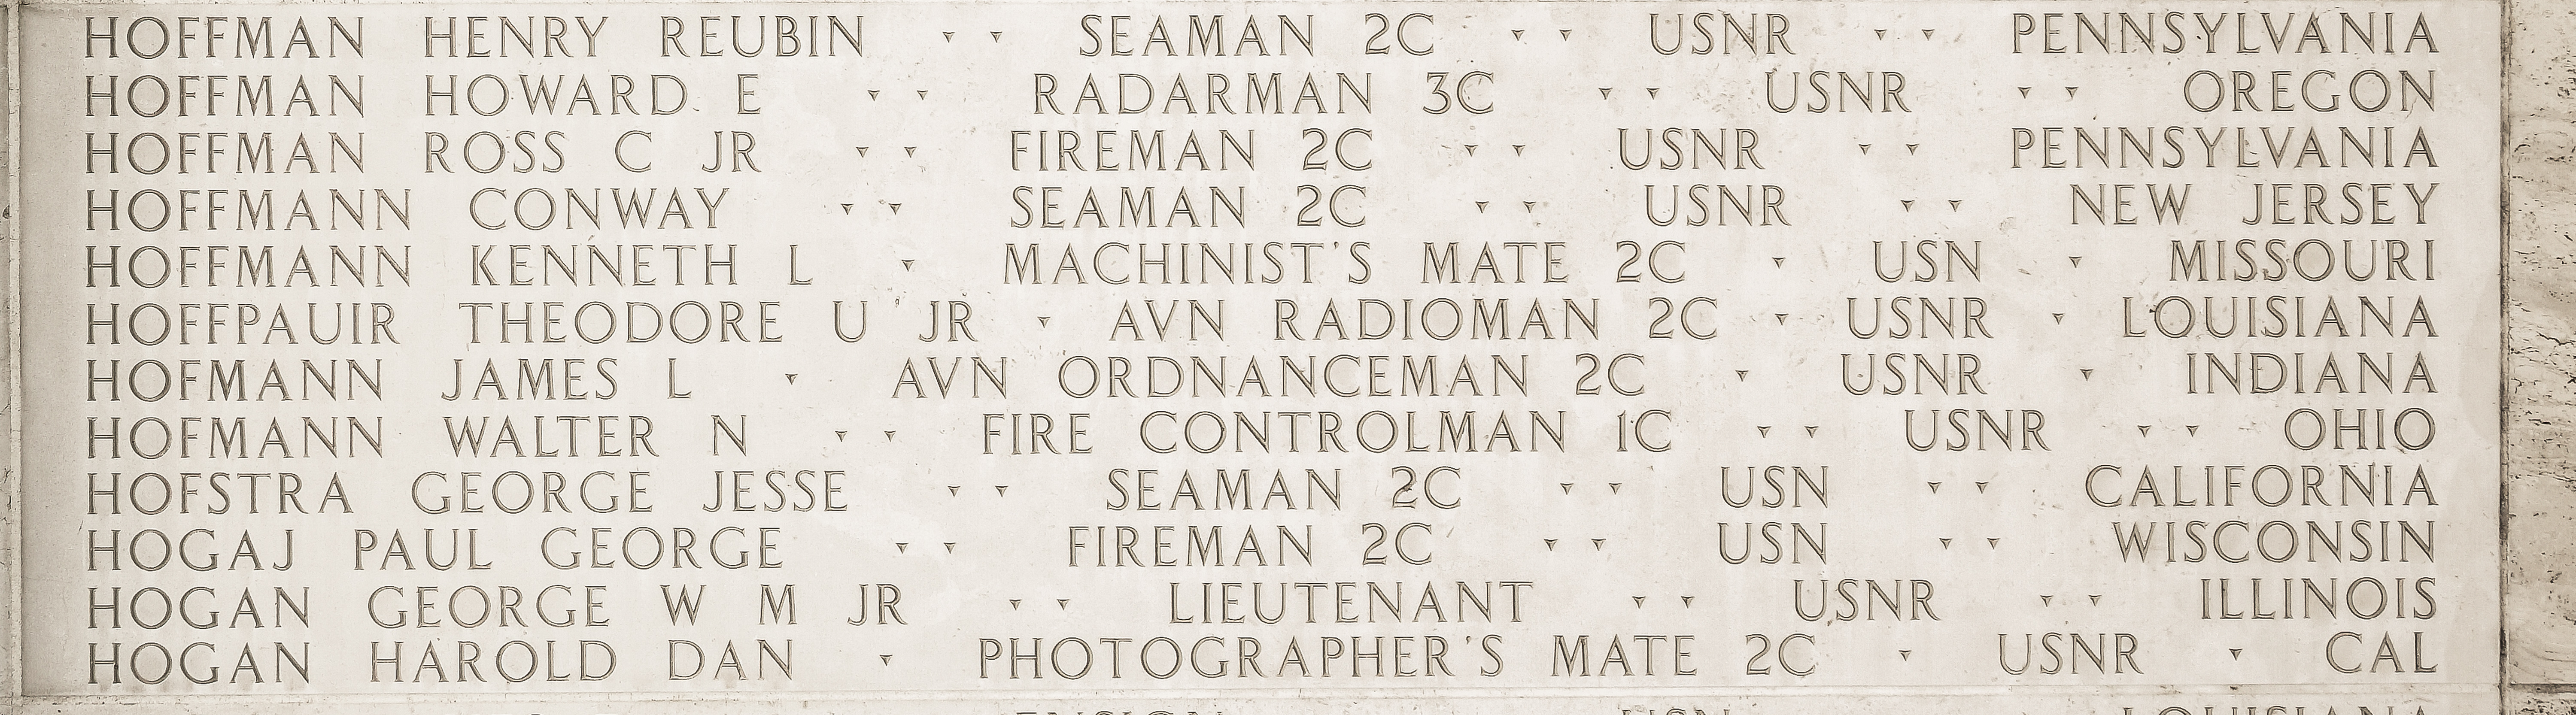 Conway  Hoffmann, Seaman Second Class